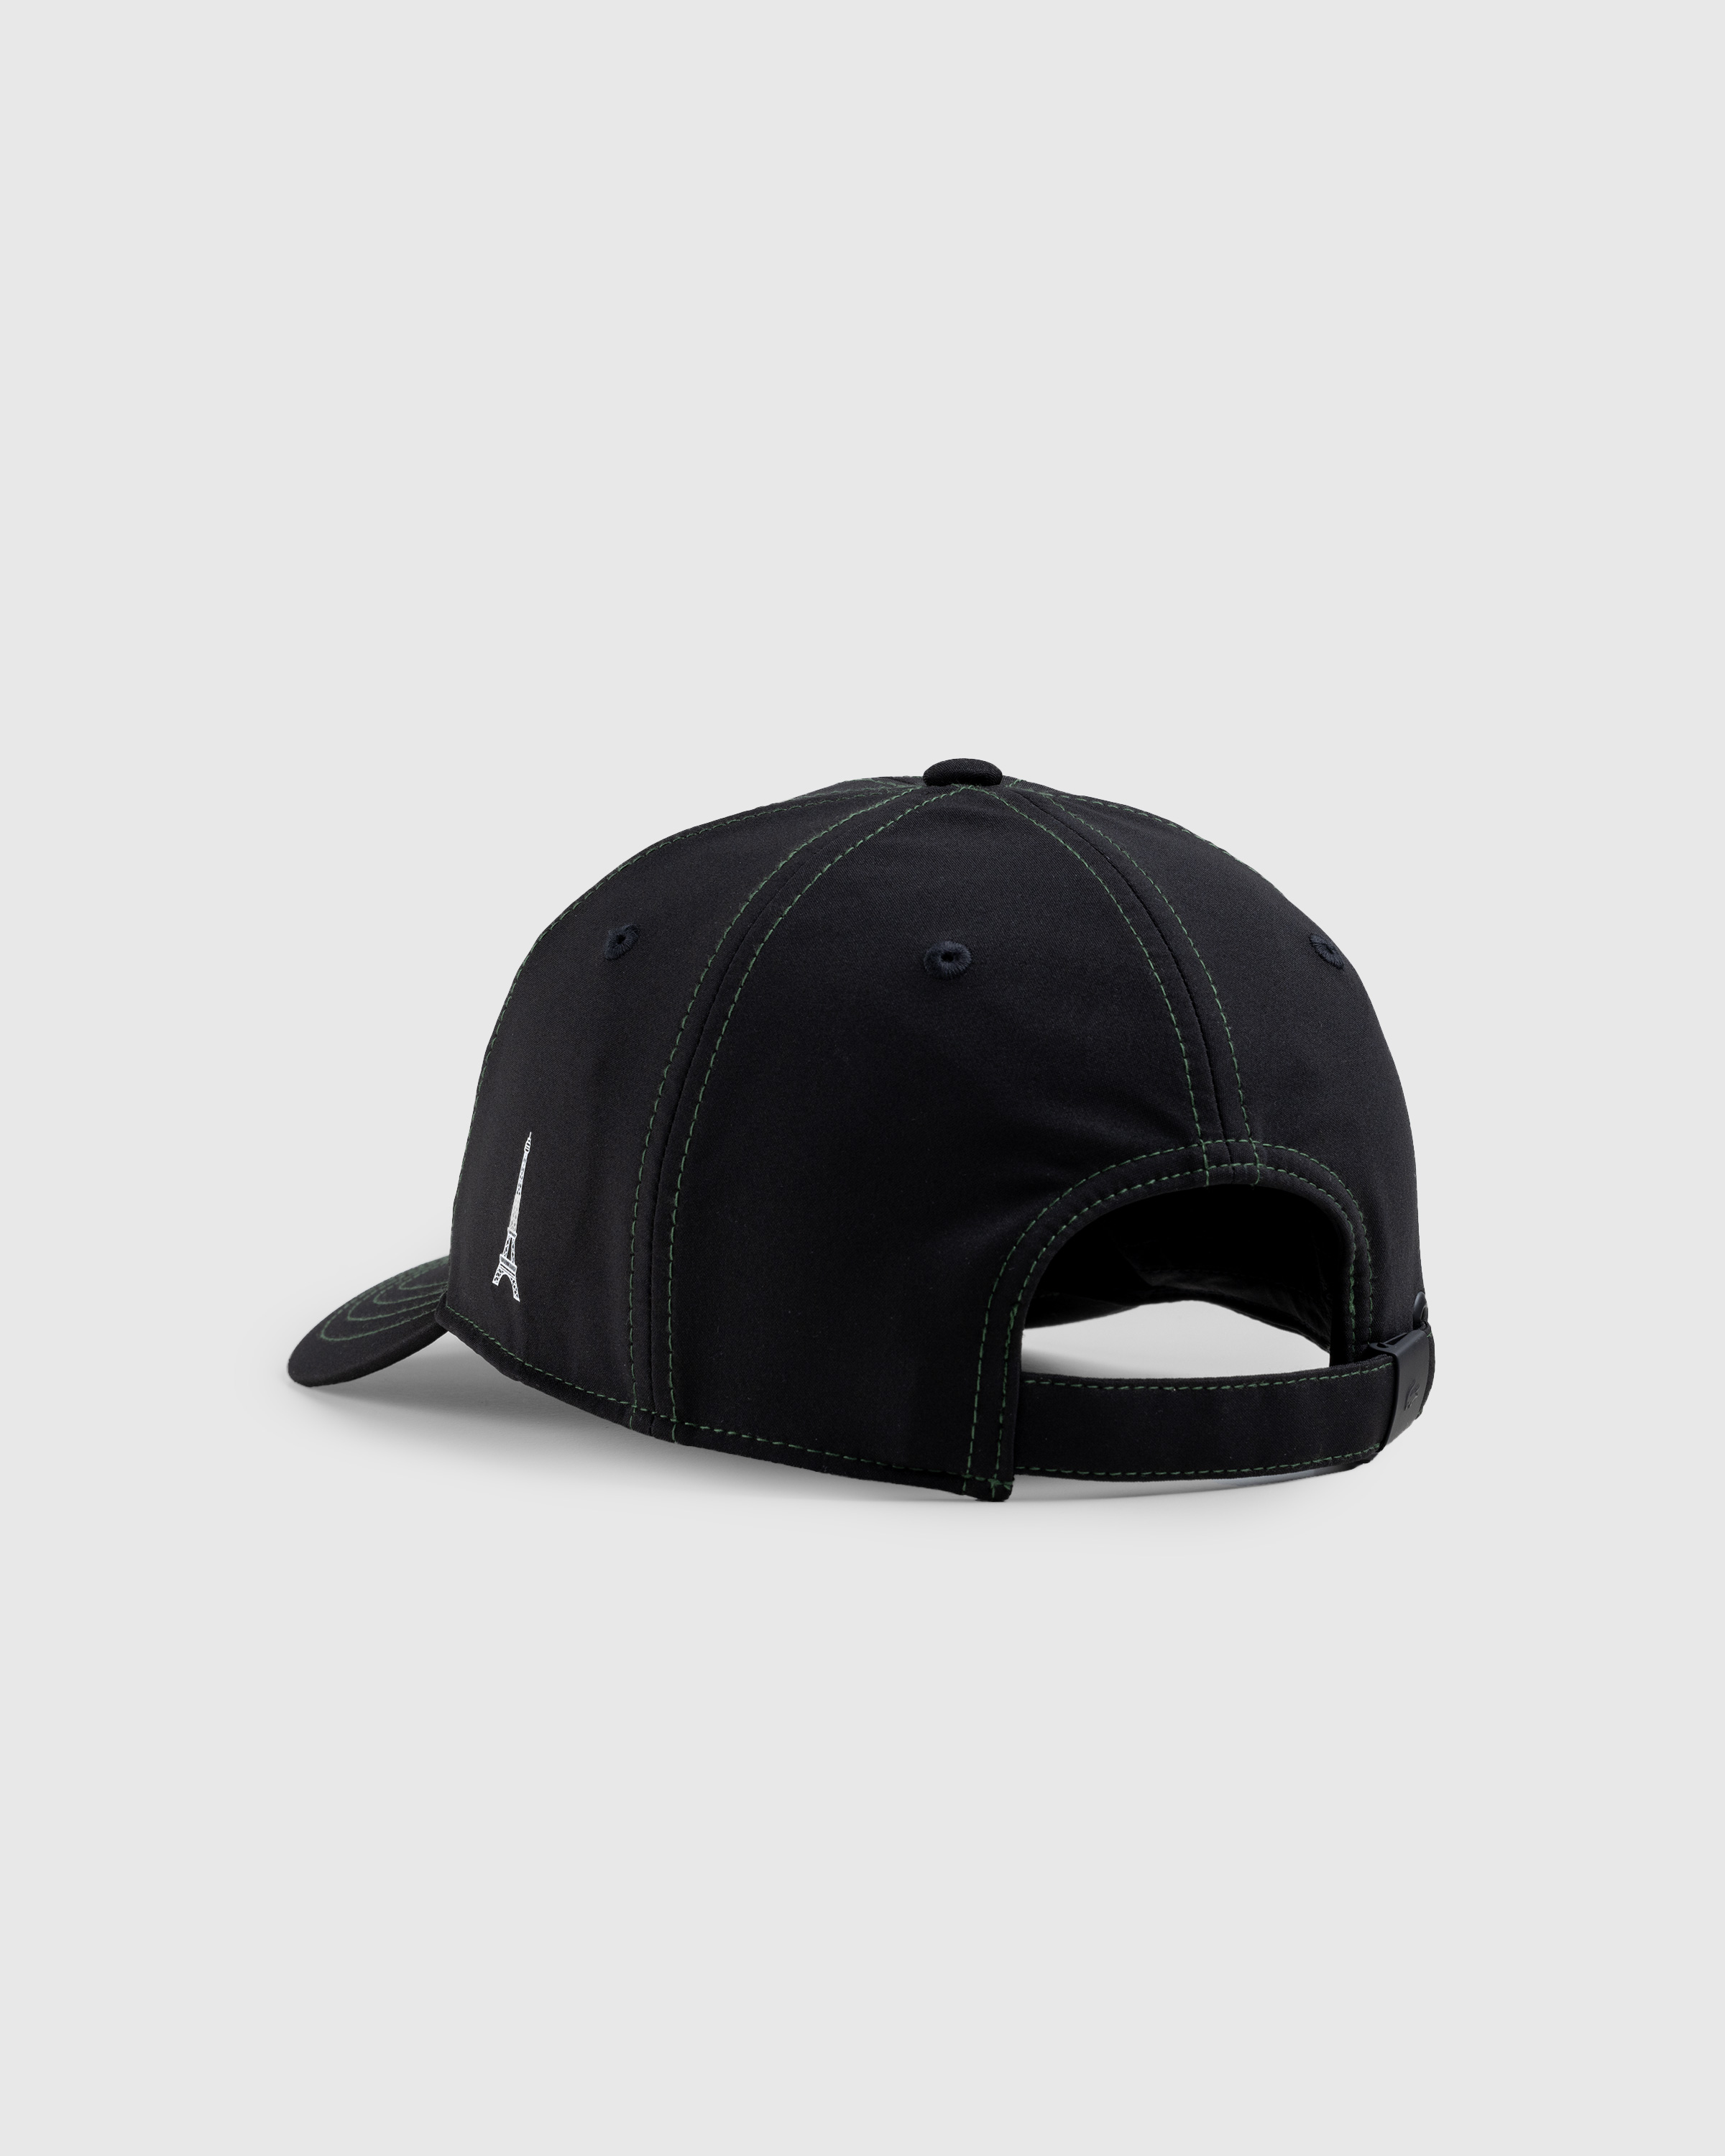 Lacoste x Highsnobiety – Not In Paris Cap Black - Caps - Black - Image 4